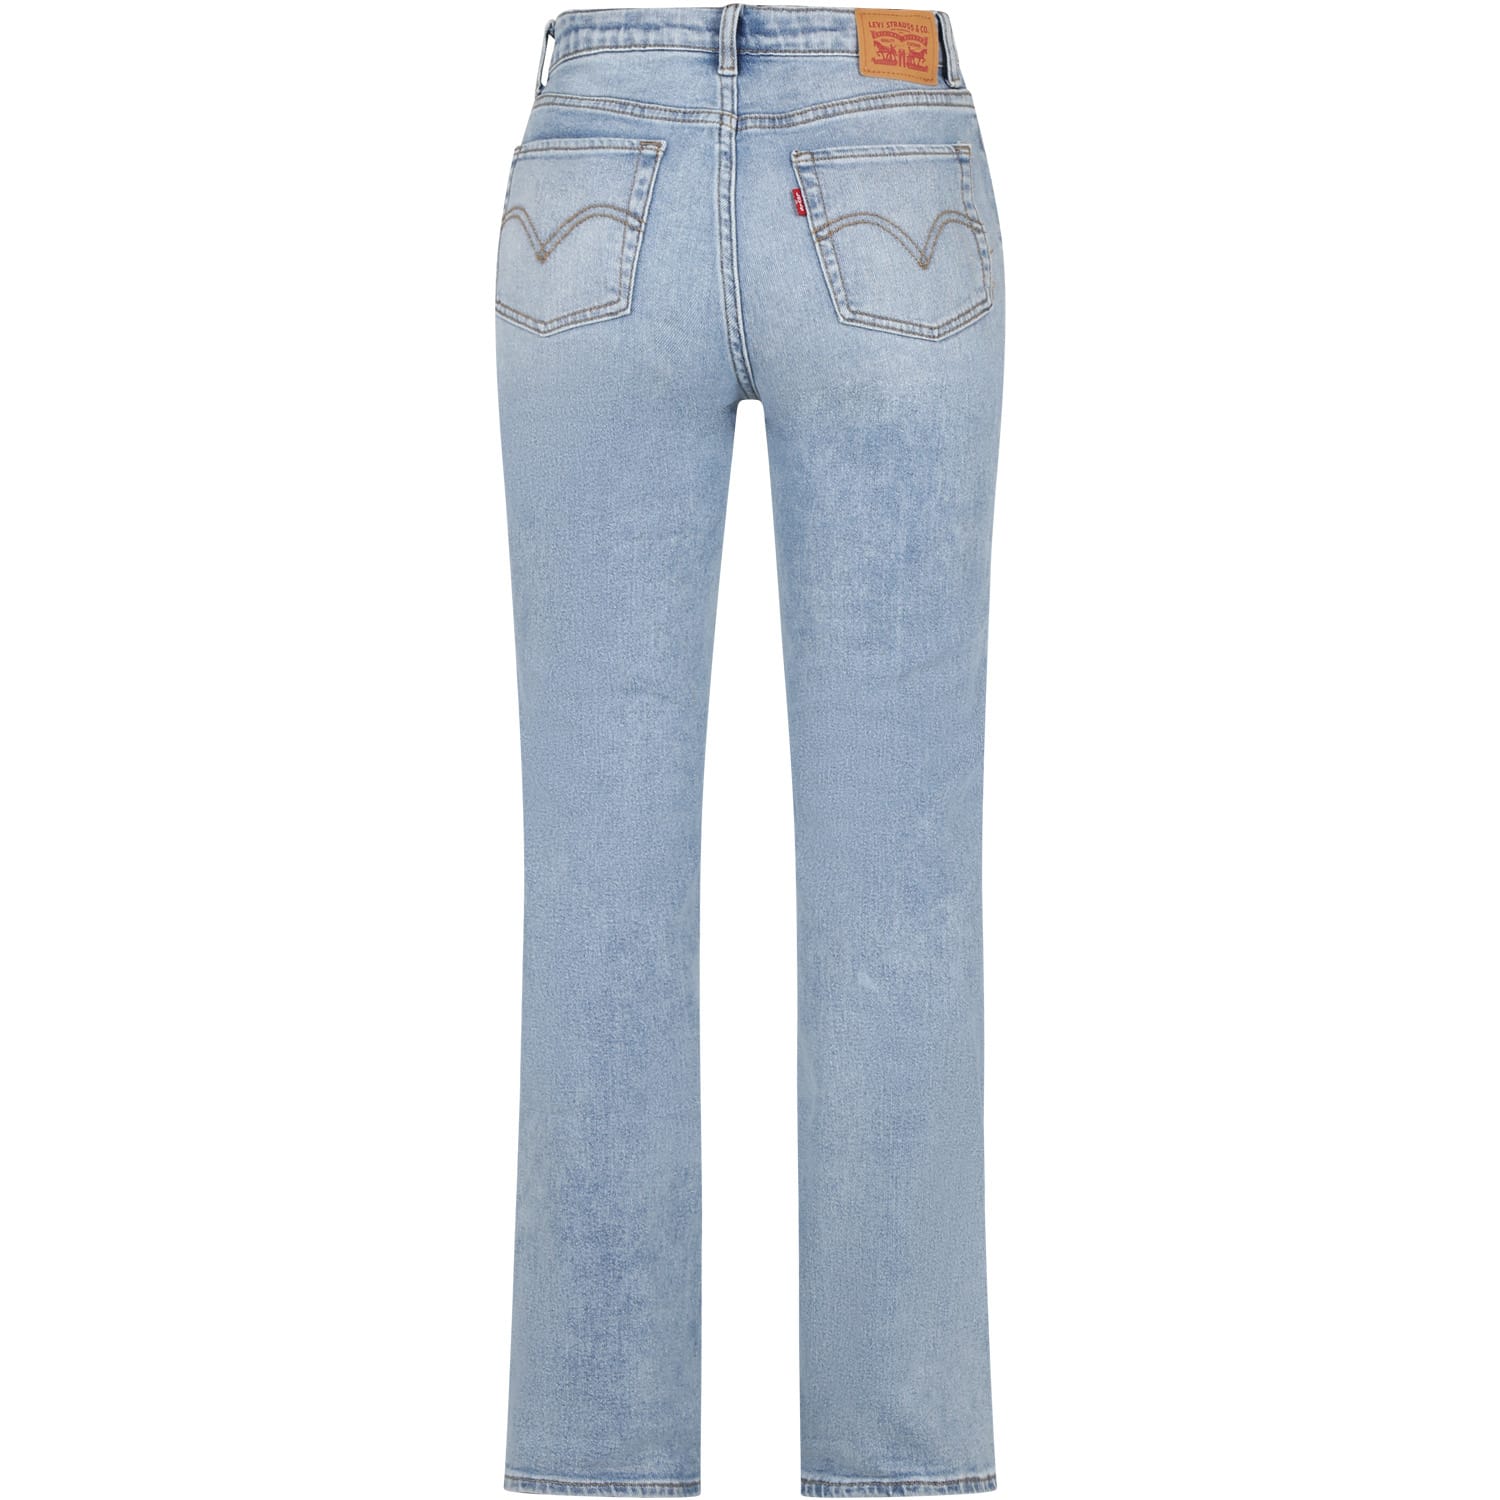 Shop Levi's Denim Jeans For Girl